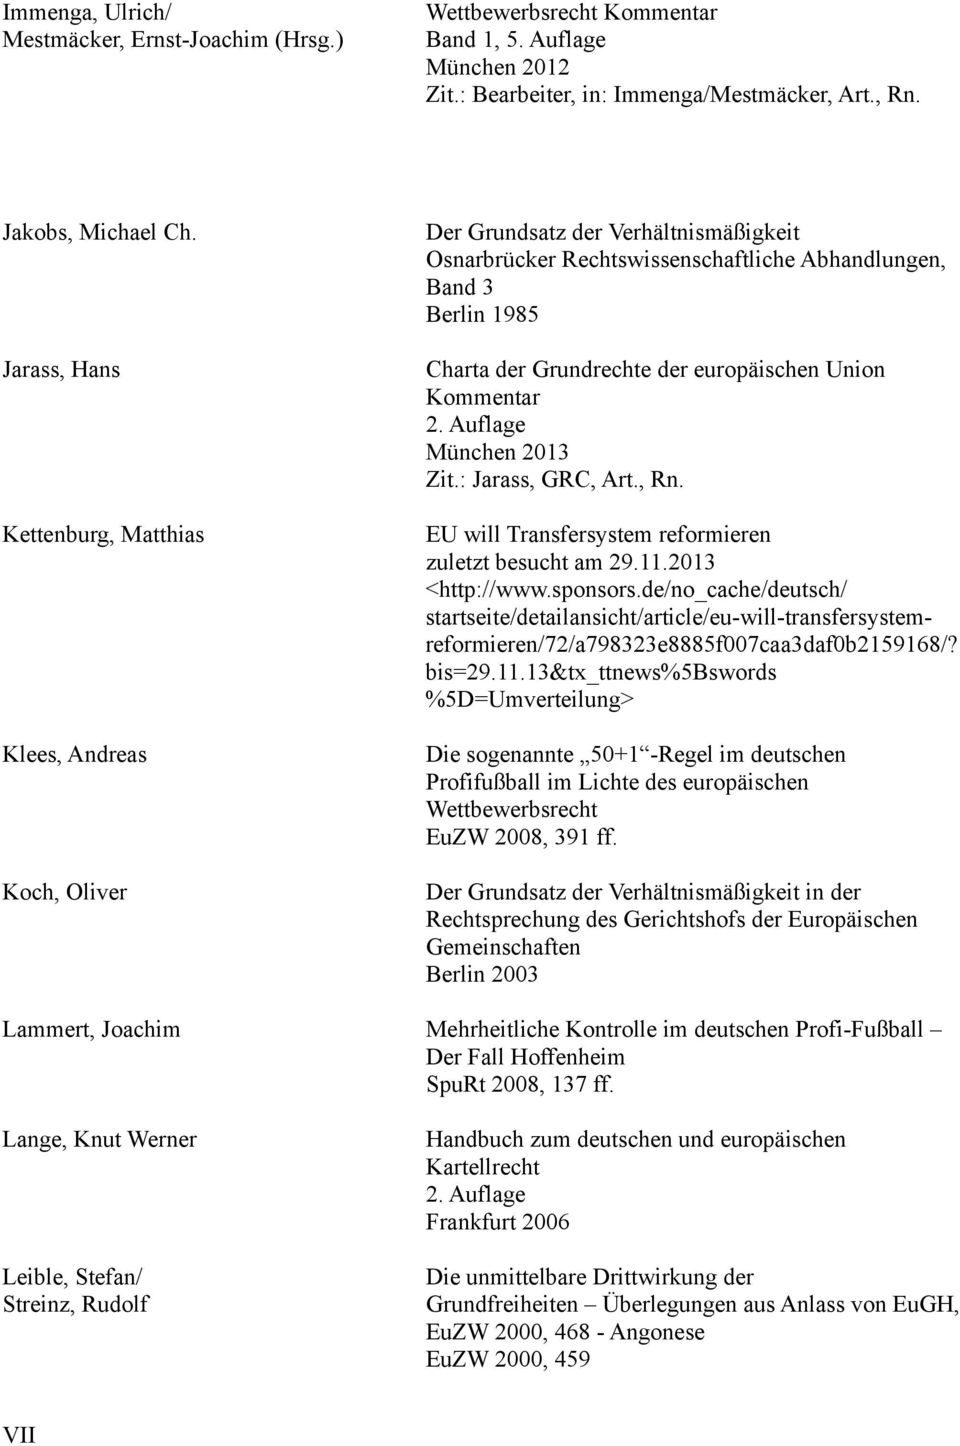 europäischen Union Kommentar 2. Auflage München 2013 Zit.: Jarass, GRC, Art., Rn. EU will Transfersystem reformieren zuletzt besucht am 29.11.2013 <http://www.sponsors.